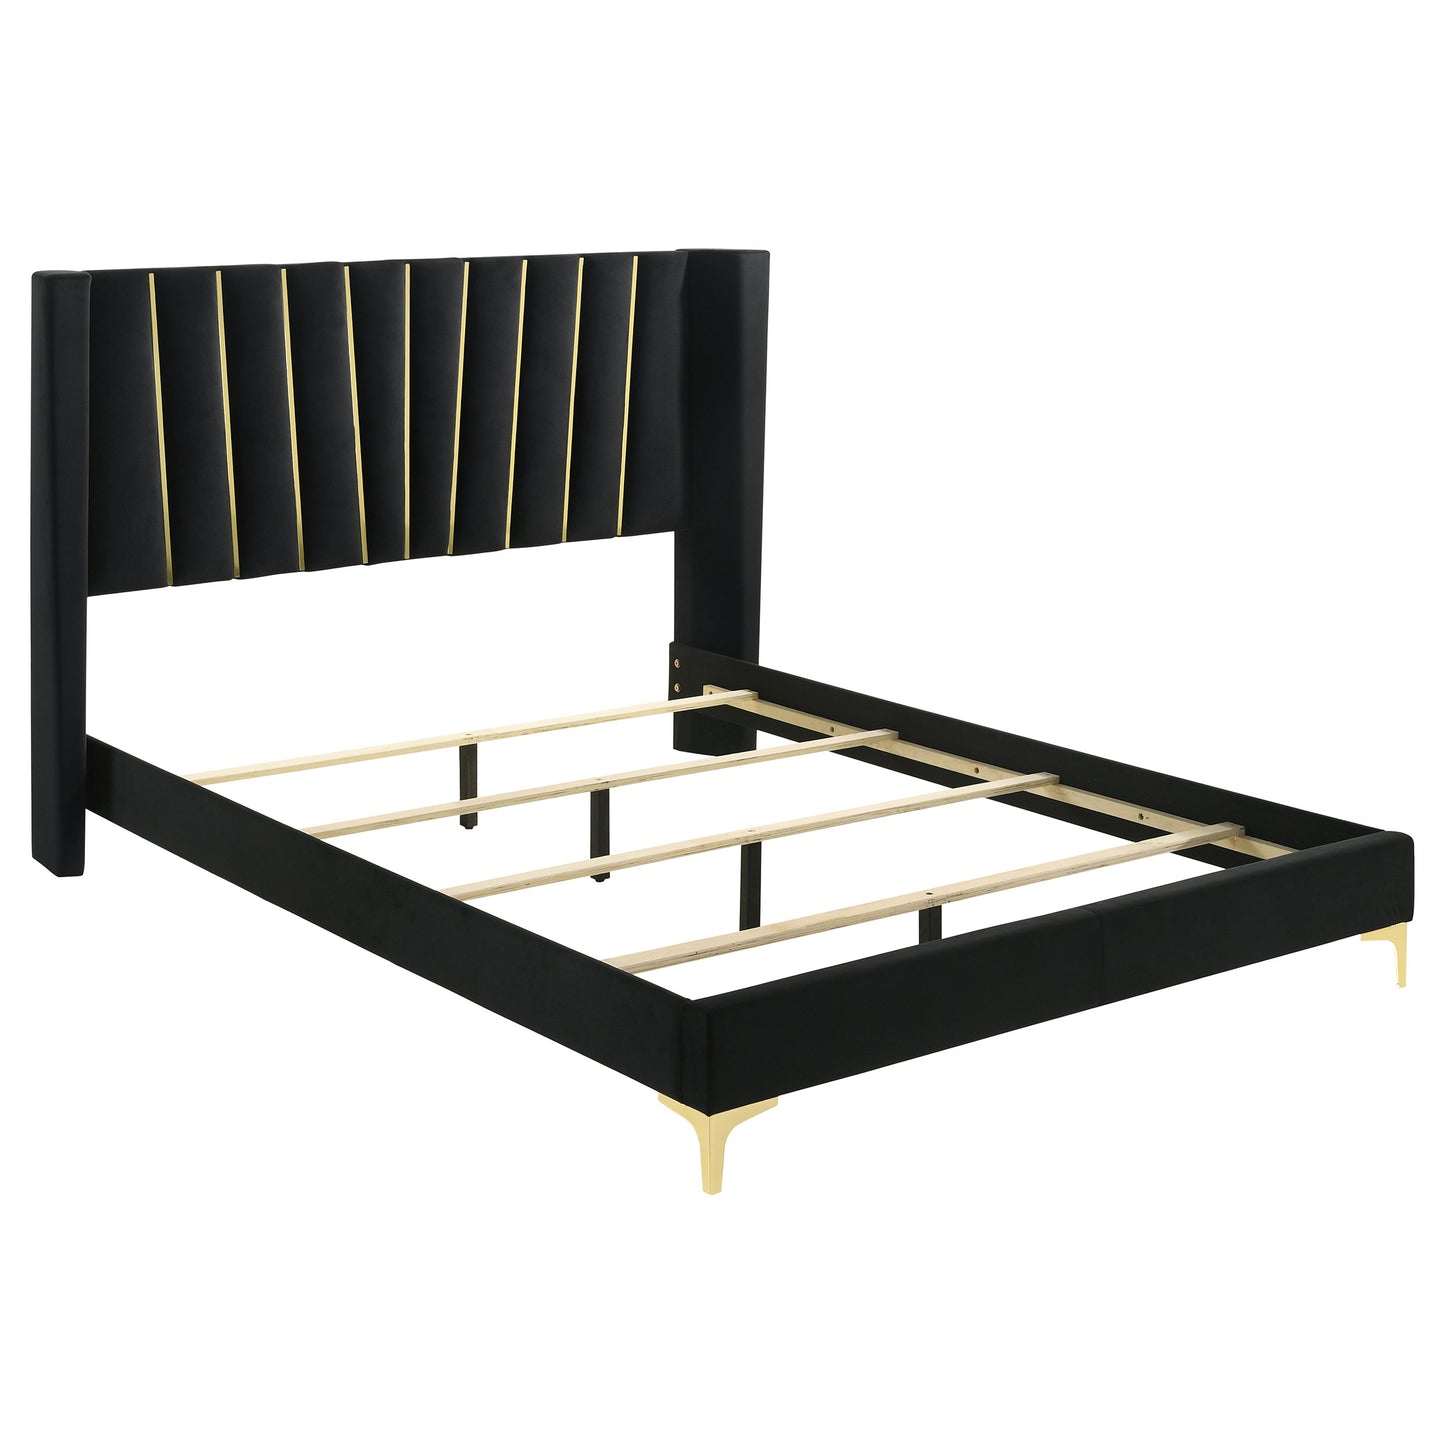 Kendall 5-piece Queen Bedroom Set Black